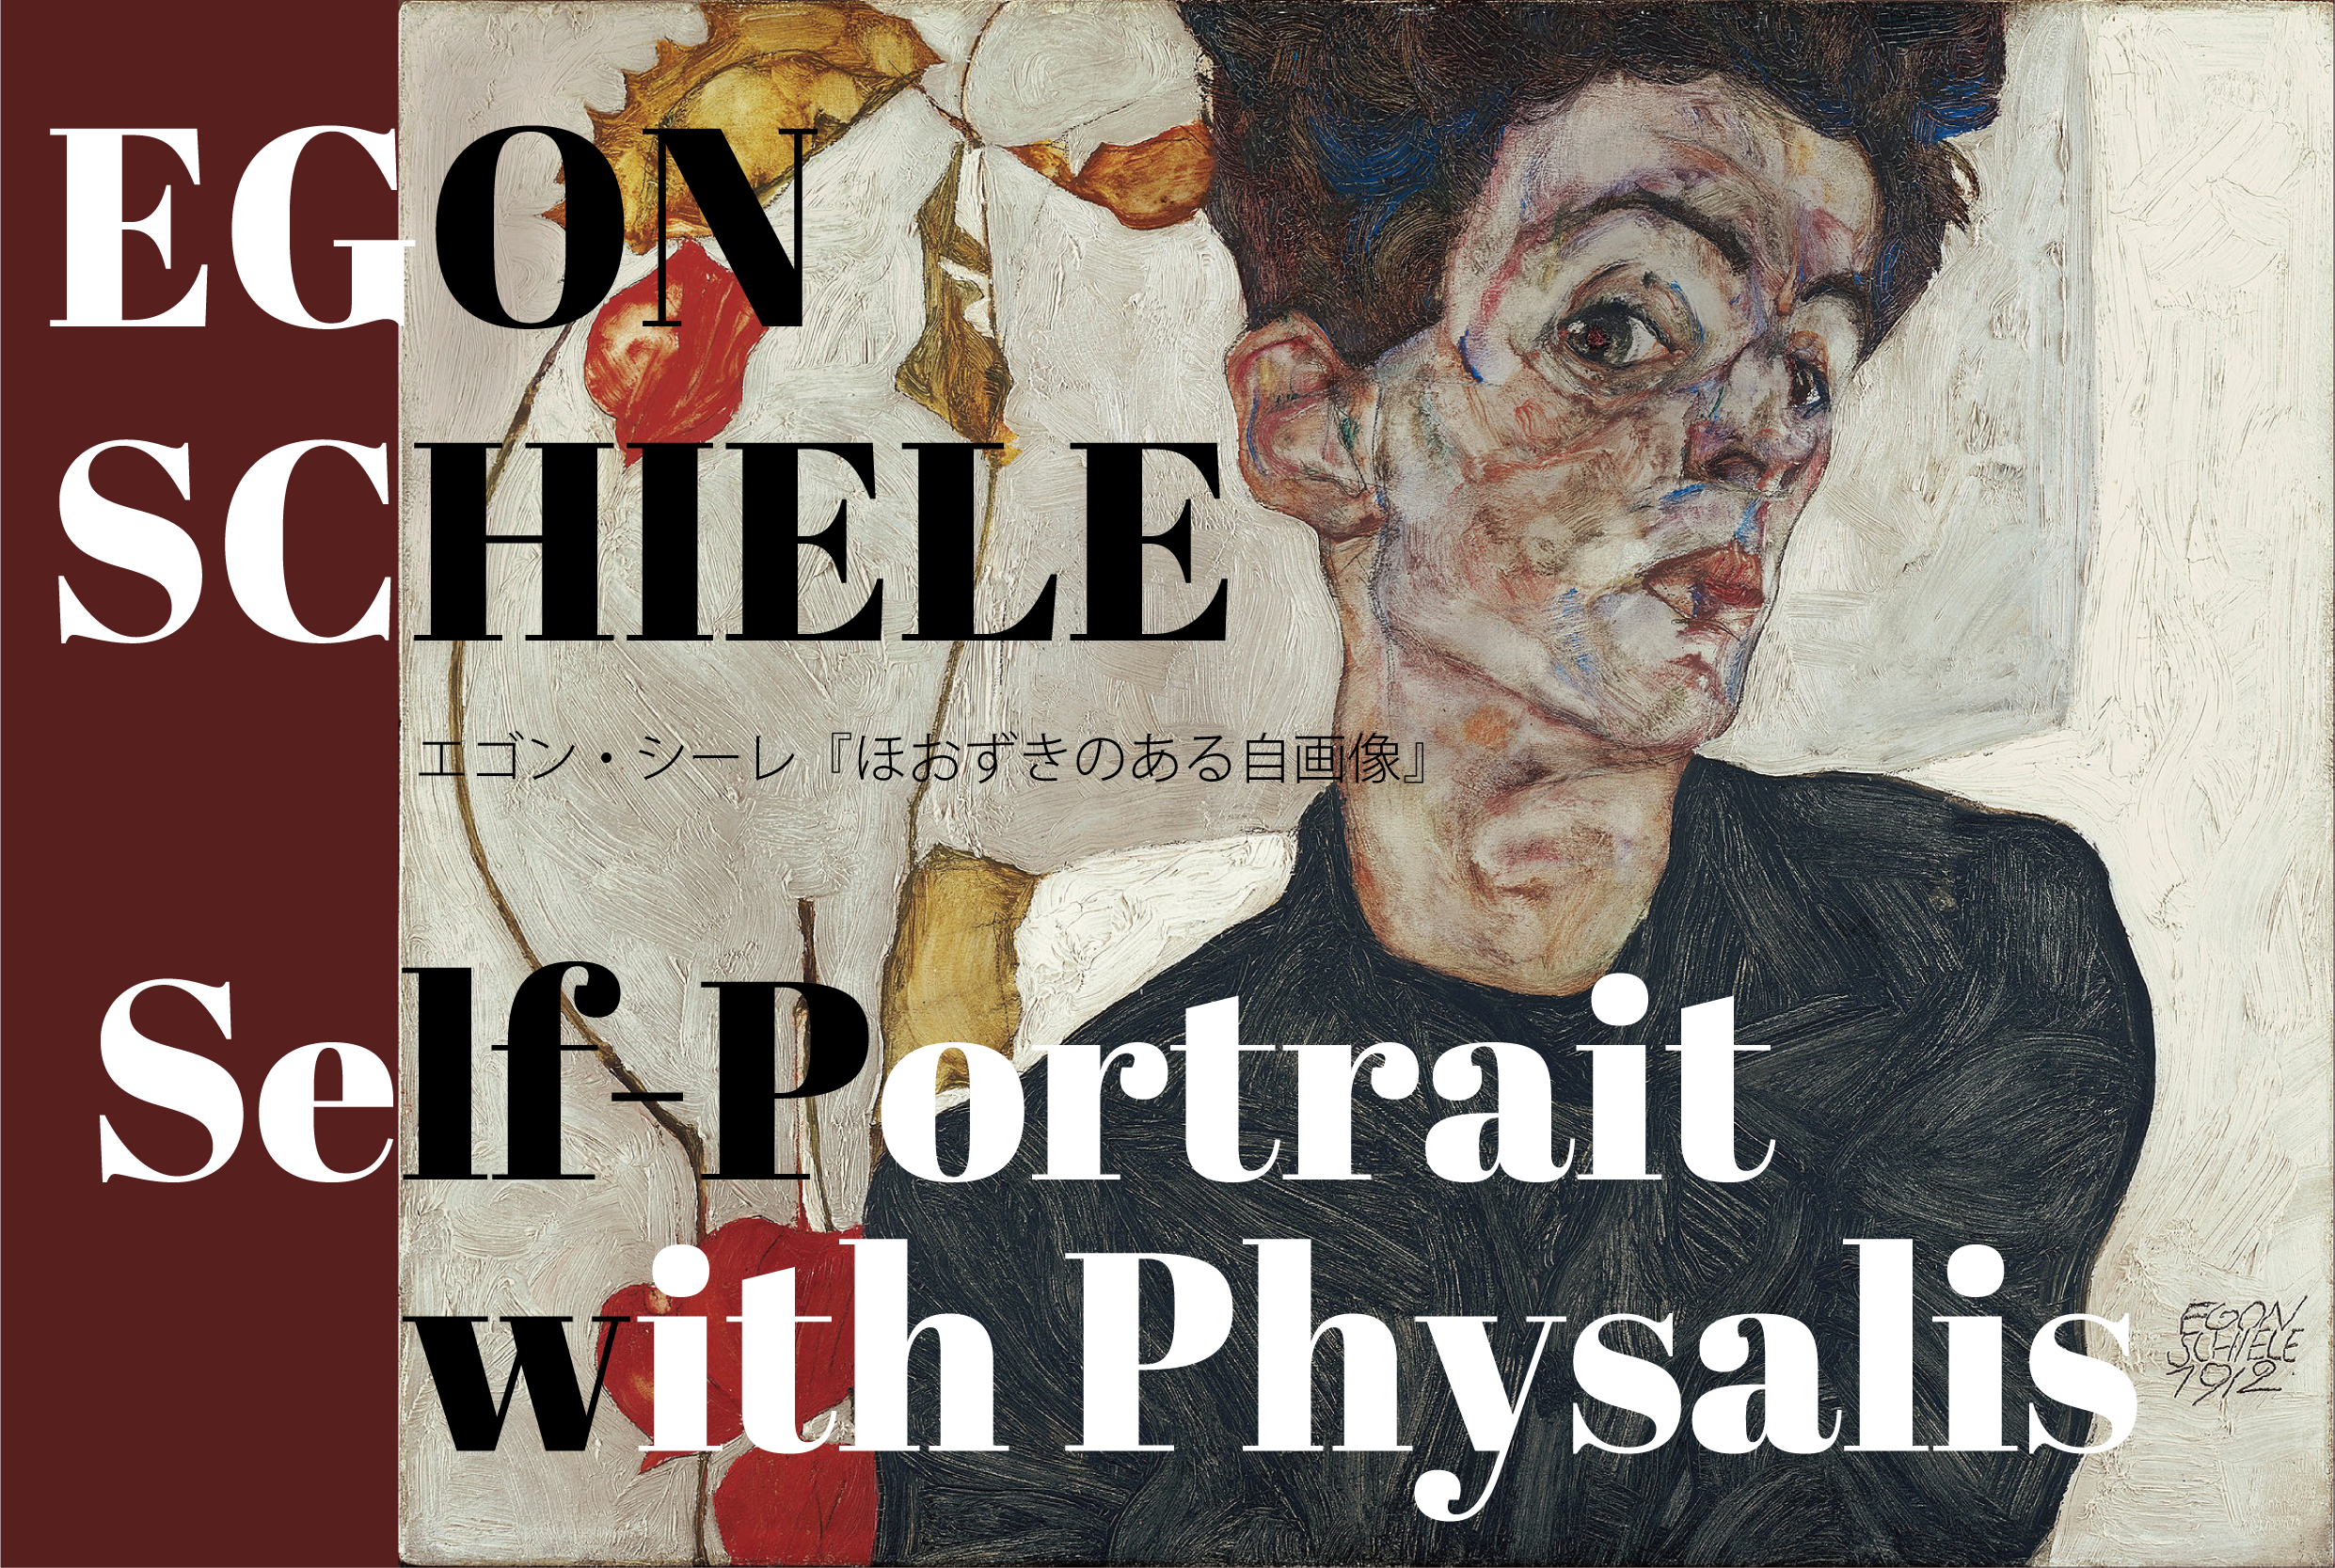 今日の一枚】エゴン・シーレ『ほおずきのある自画像』【東京都美術館で 